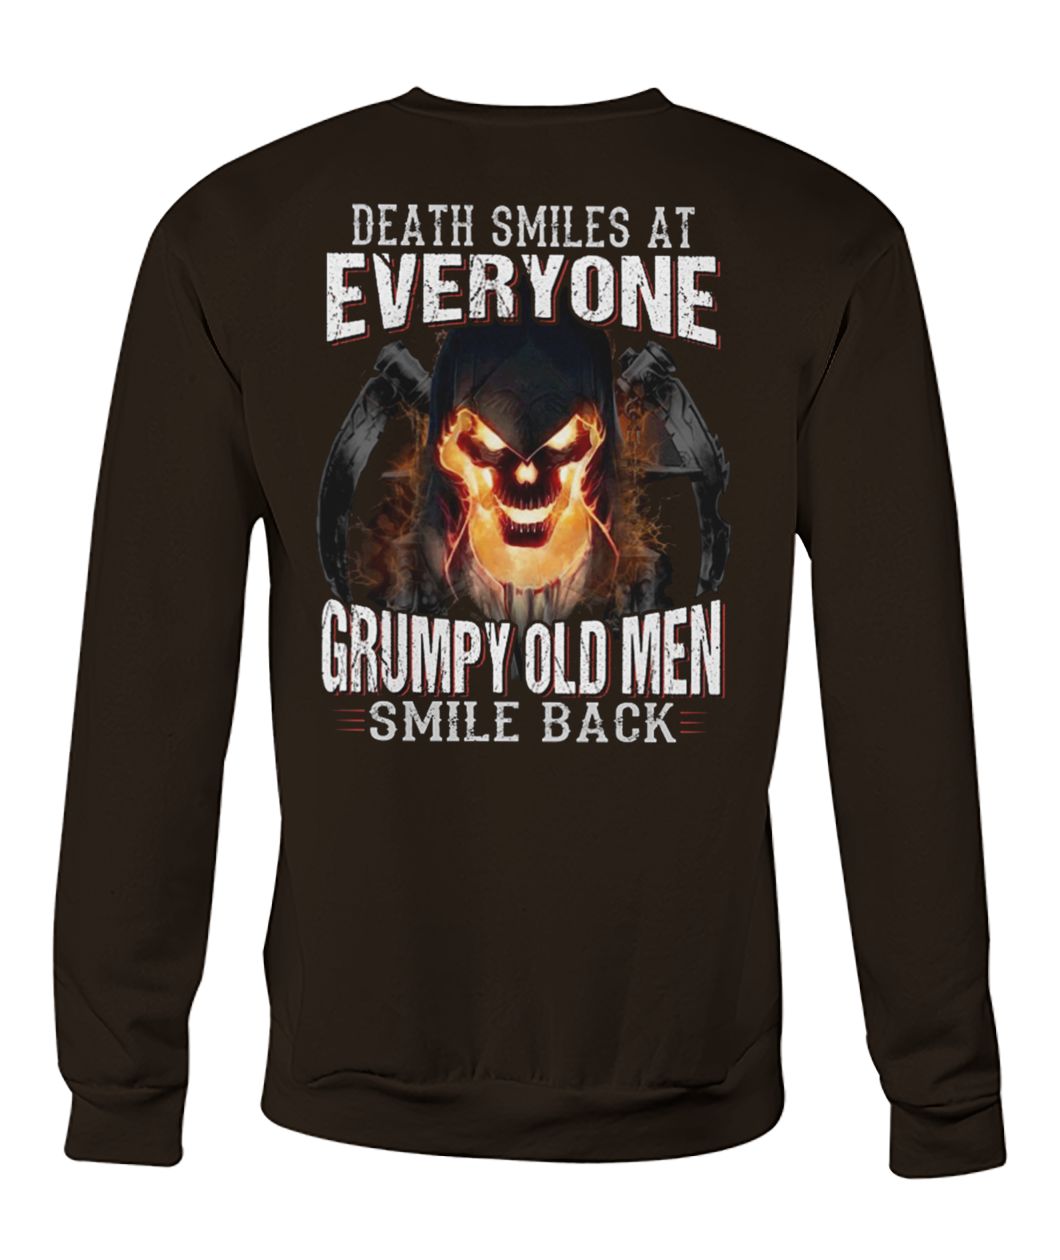 Death smiles at everyone grumpy old men smile back crew neck sweatshirt